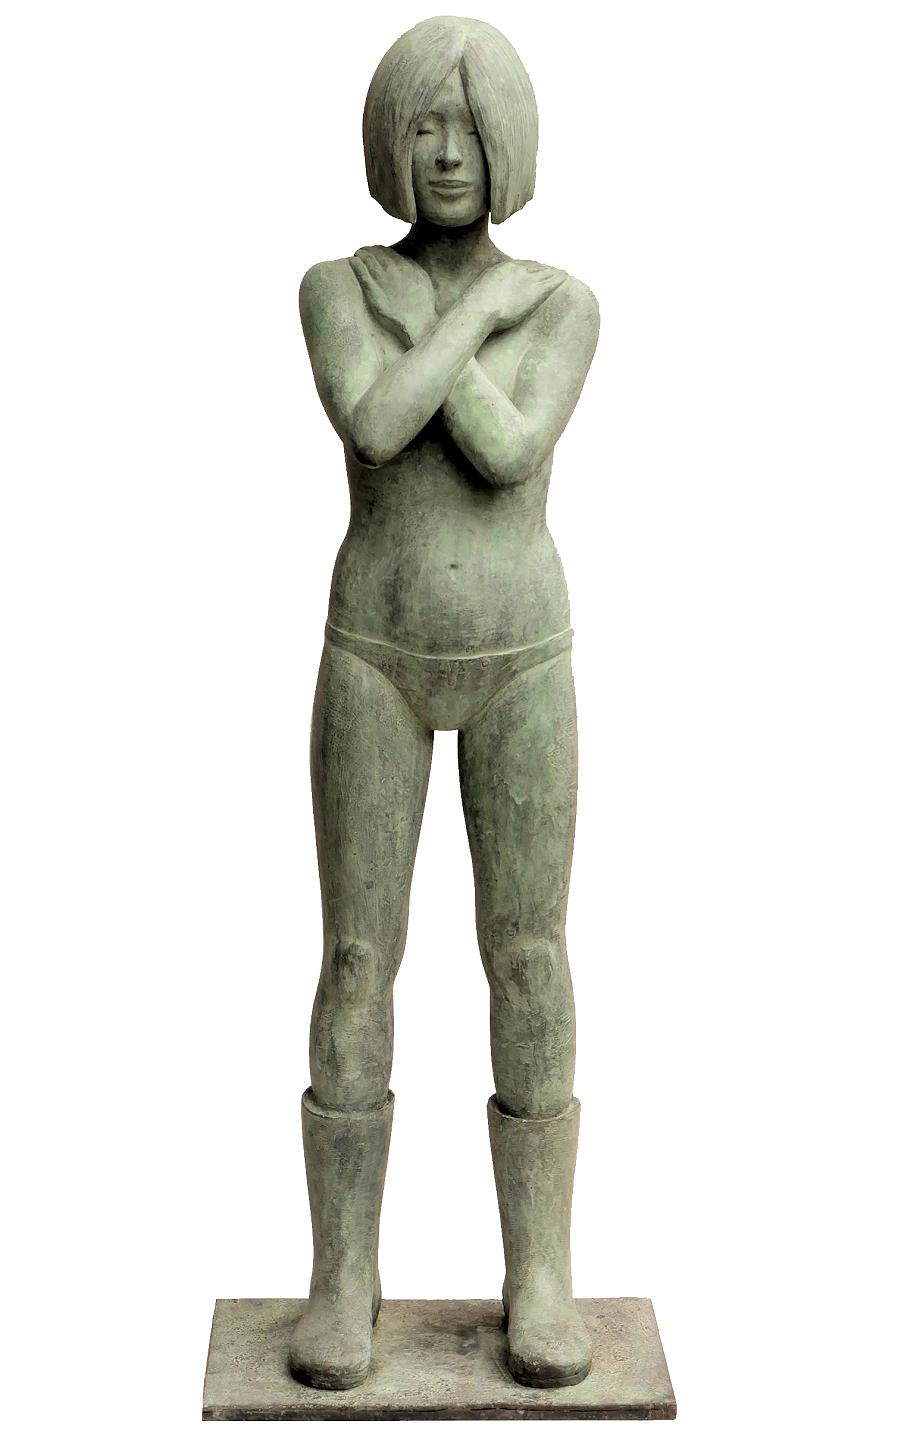 Nude Sculpture Erwin Meijer - Kaplaarzen - Bottes Wellies en bronze - Sculpture - Jeune fille contemporaine en stock